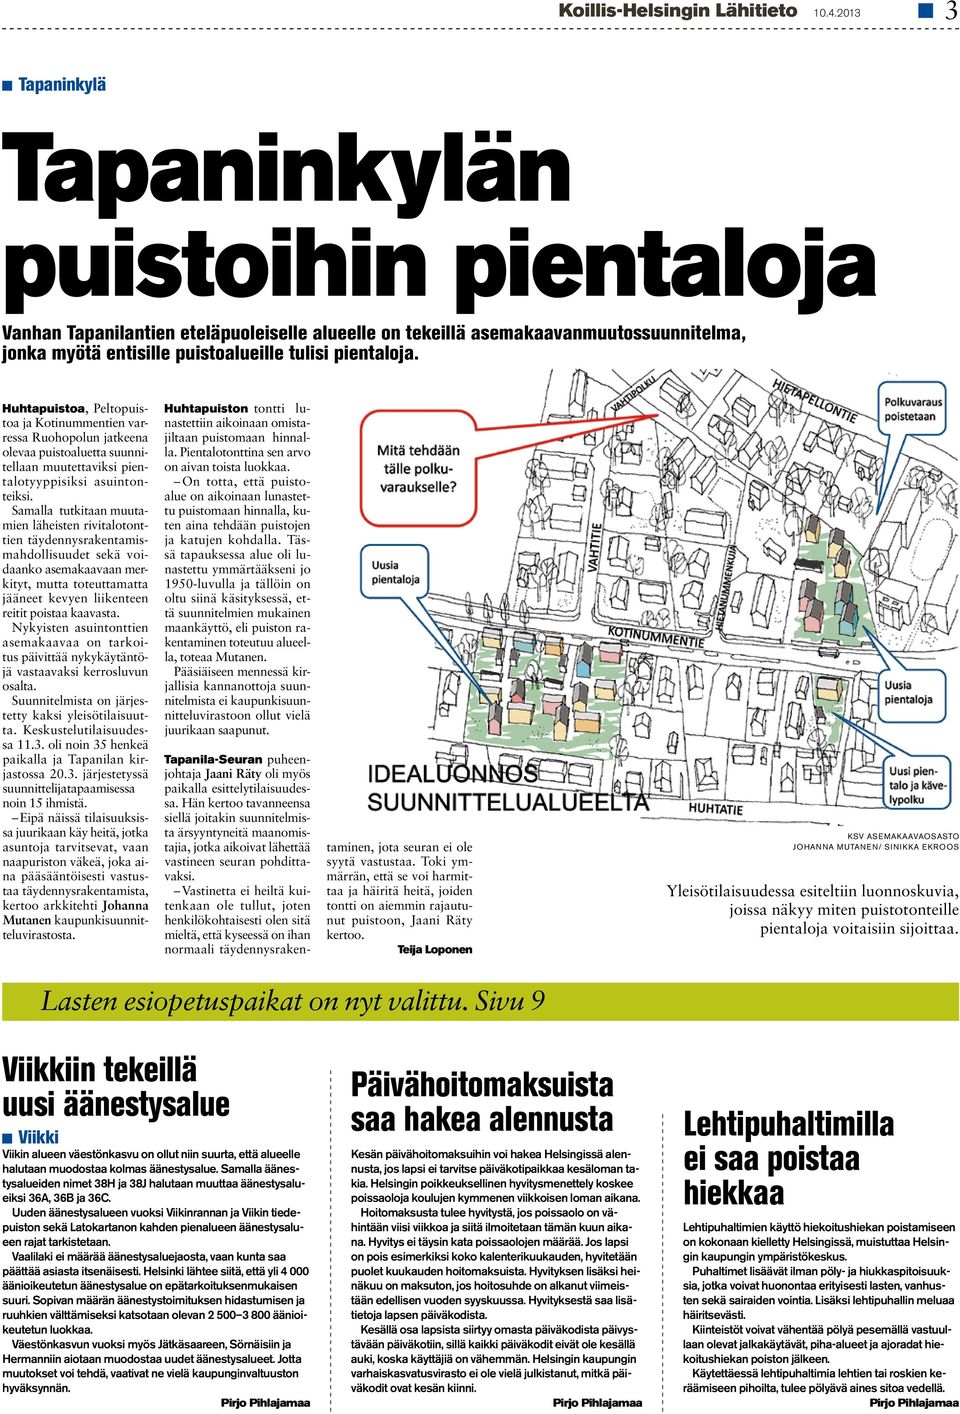 Huhtapuistoa, Peltopuistoa ja Kotinummentien varressa Ruohopolun jatkeena olevaa puistoaluetta suunnitellaan muutettaviksi pientalotyyppisiksi asuintonteiksi.